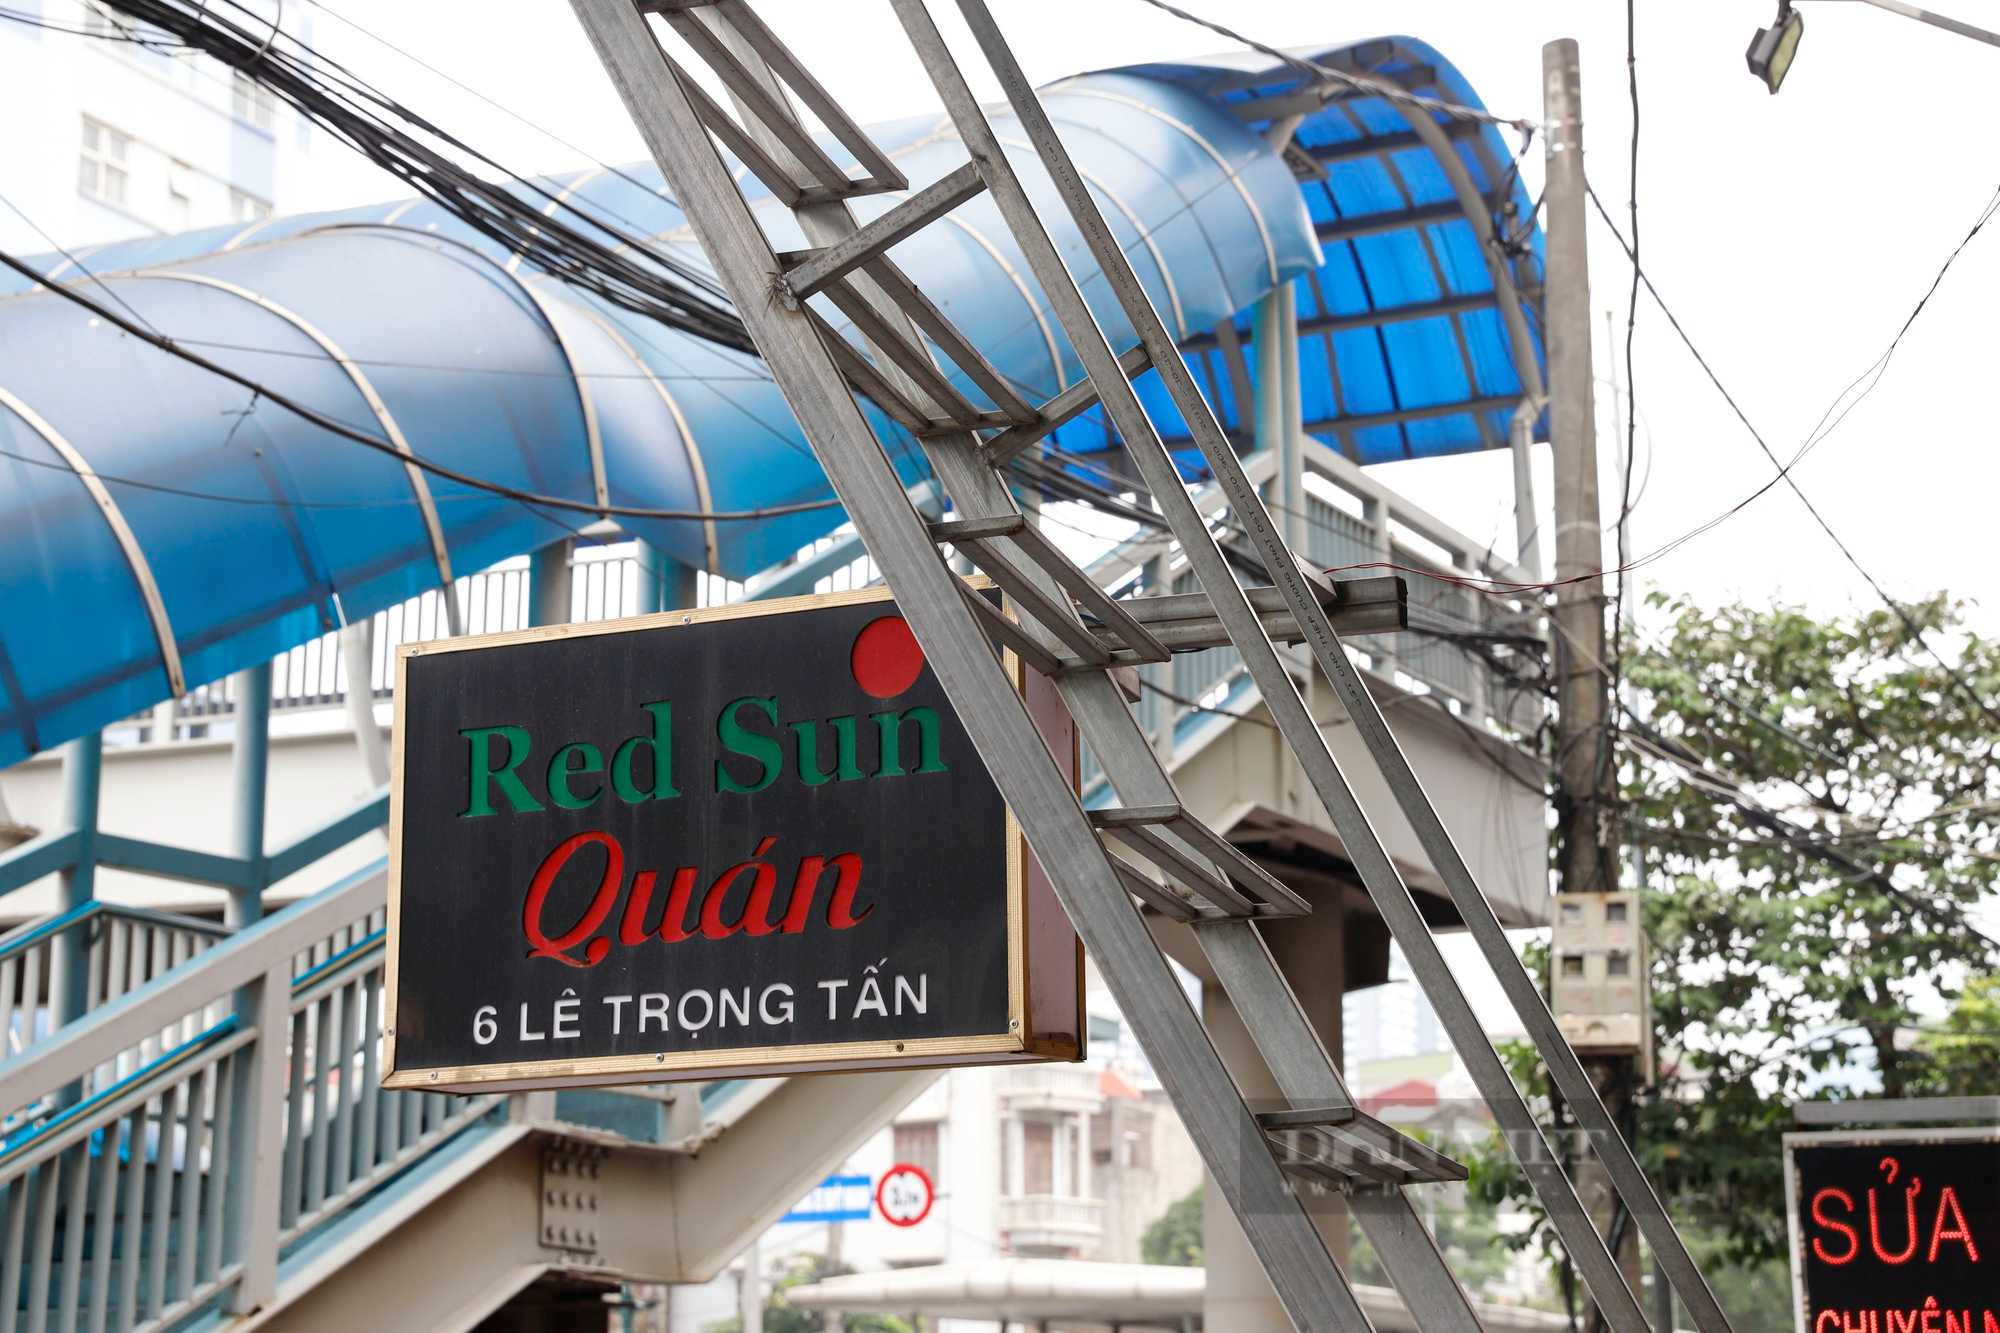 Chung cư mini, khách sạn tại Hà Nội lắp thang thoát hiểm hàng trăm triệu đồng - Ảnh 3.